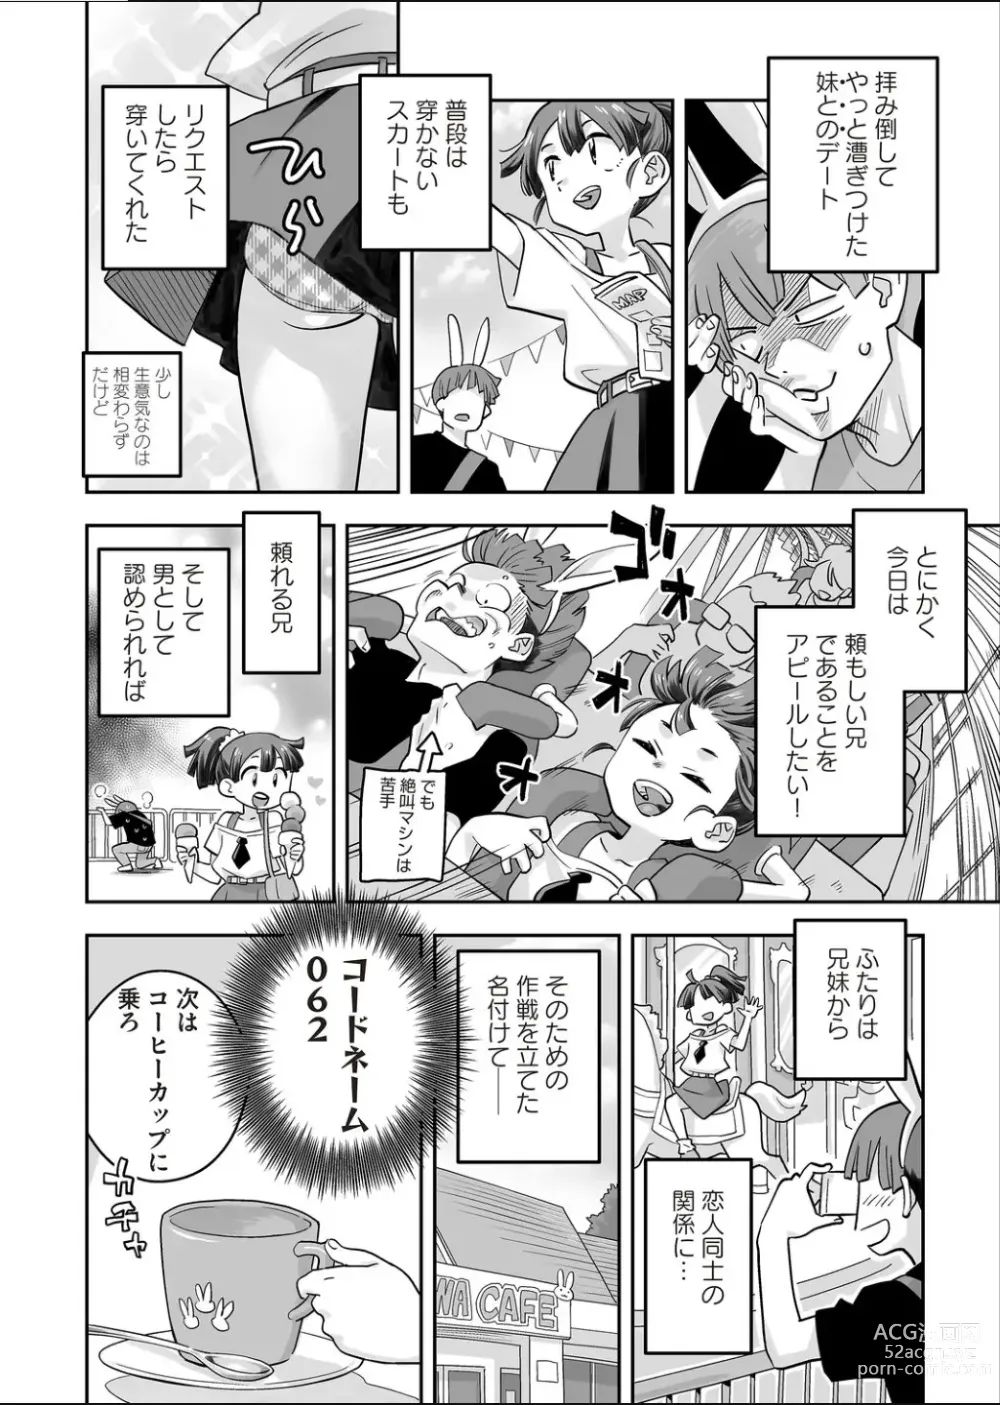 Page 2 of manga Codename wa 062